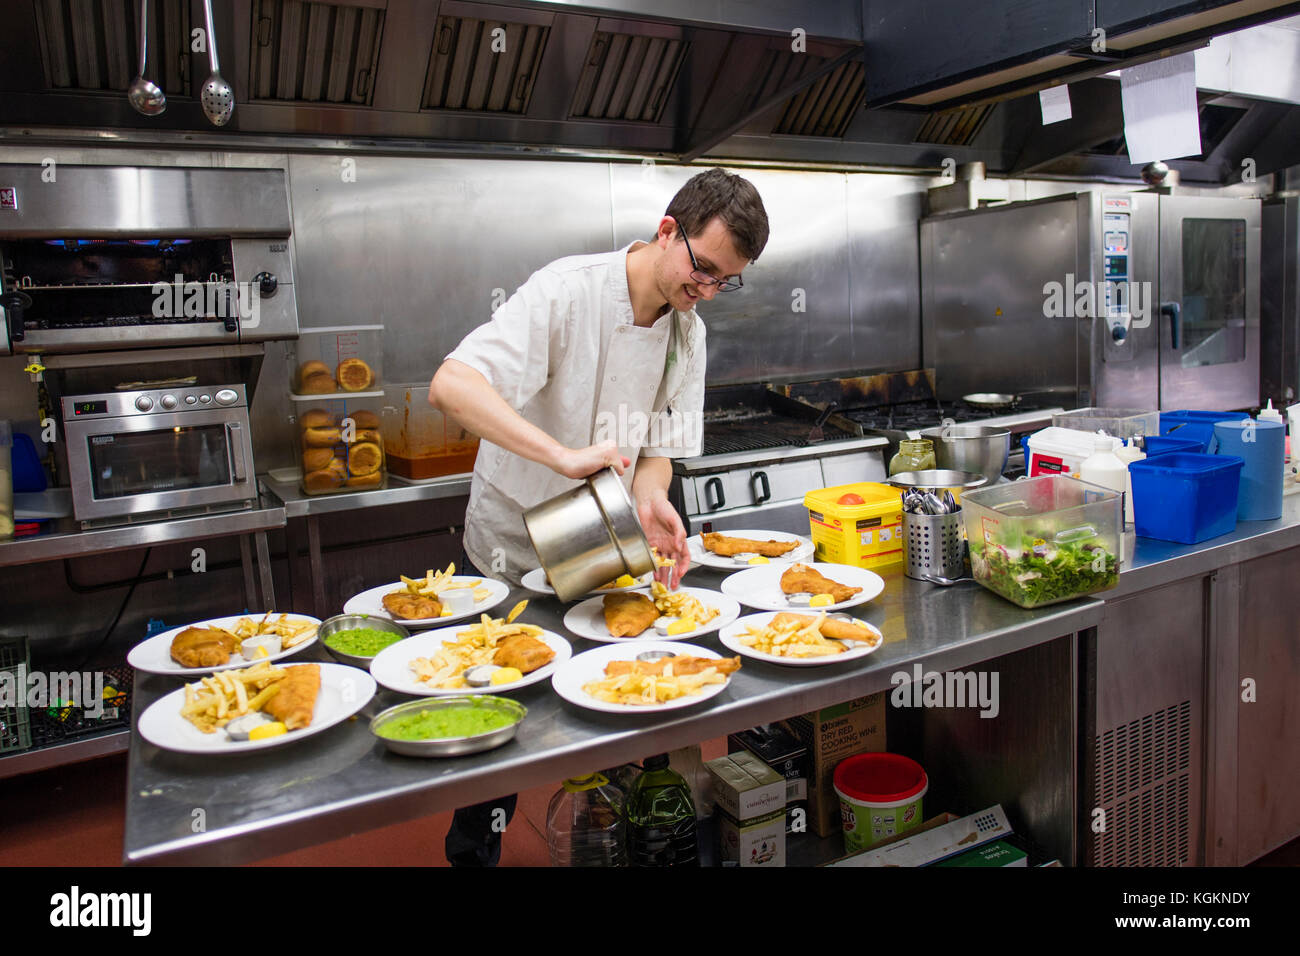 Gastronomie und Gastfreundschaft Arbeit in Großbritannien: ein Mann Vorbereitung Platten von Fisch und Chips in einem hotel restaurant Küche, Großbritannien Stockfoto